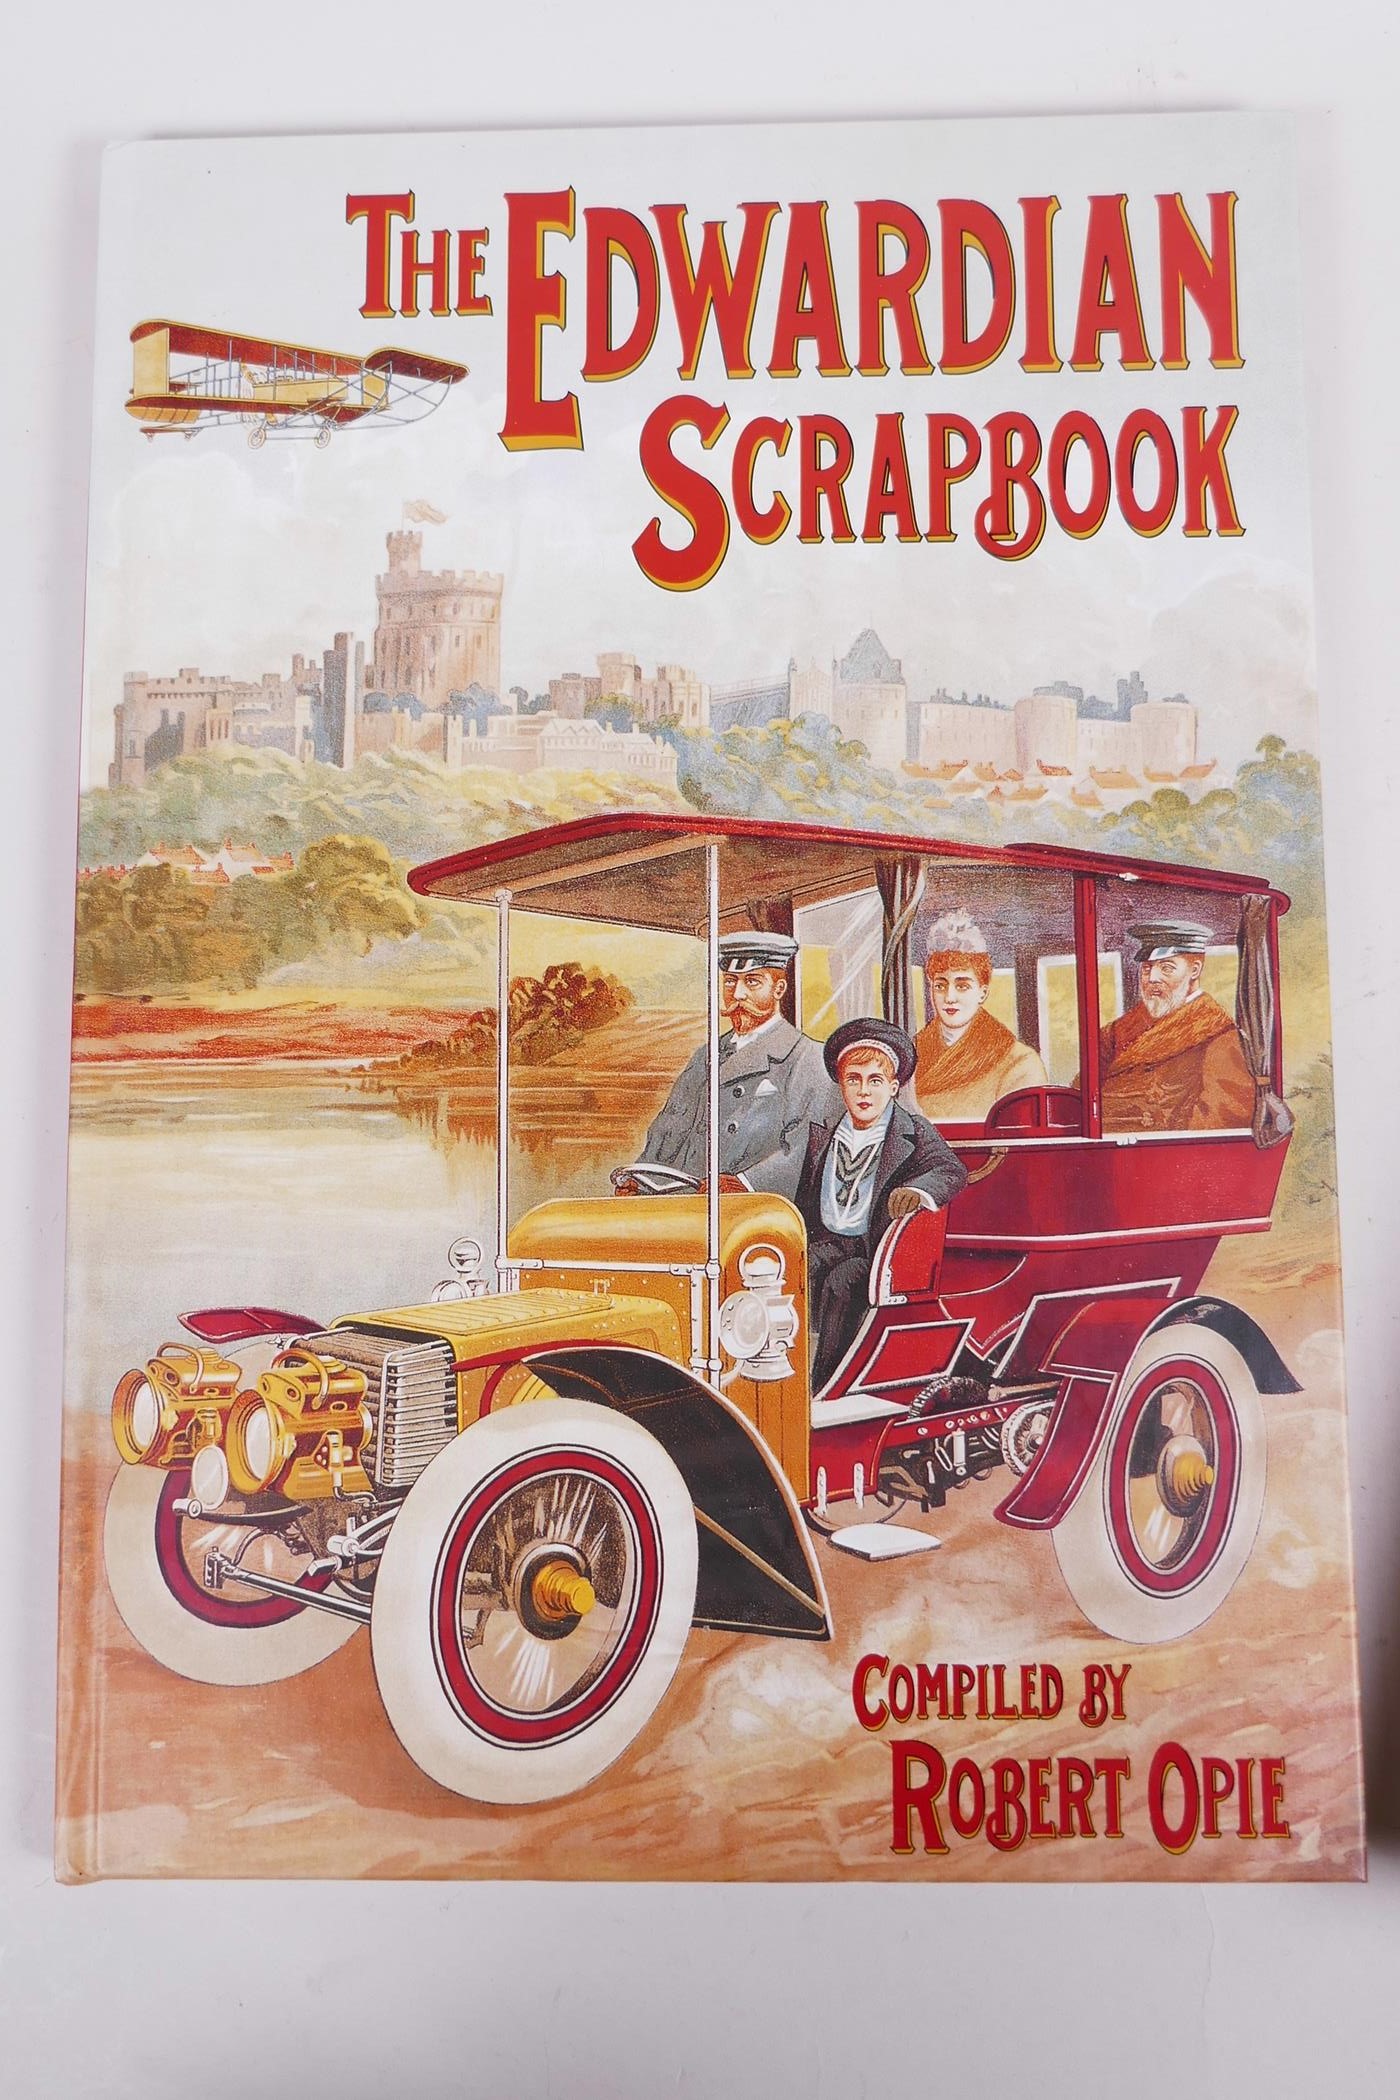 Robert Opie, ‘The Victorian Scrapbook’, ‘The Edwardian Scrapbook, ‘The 1930s Scrapbook’ and others - Image 4 of 9